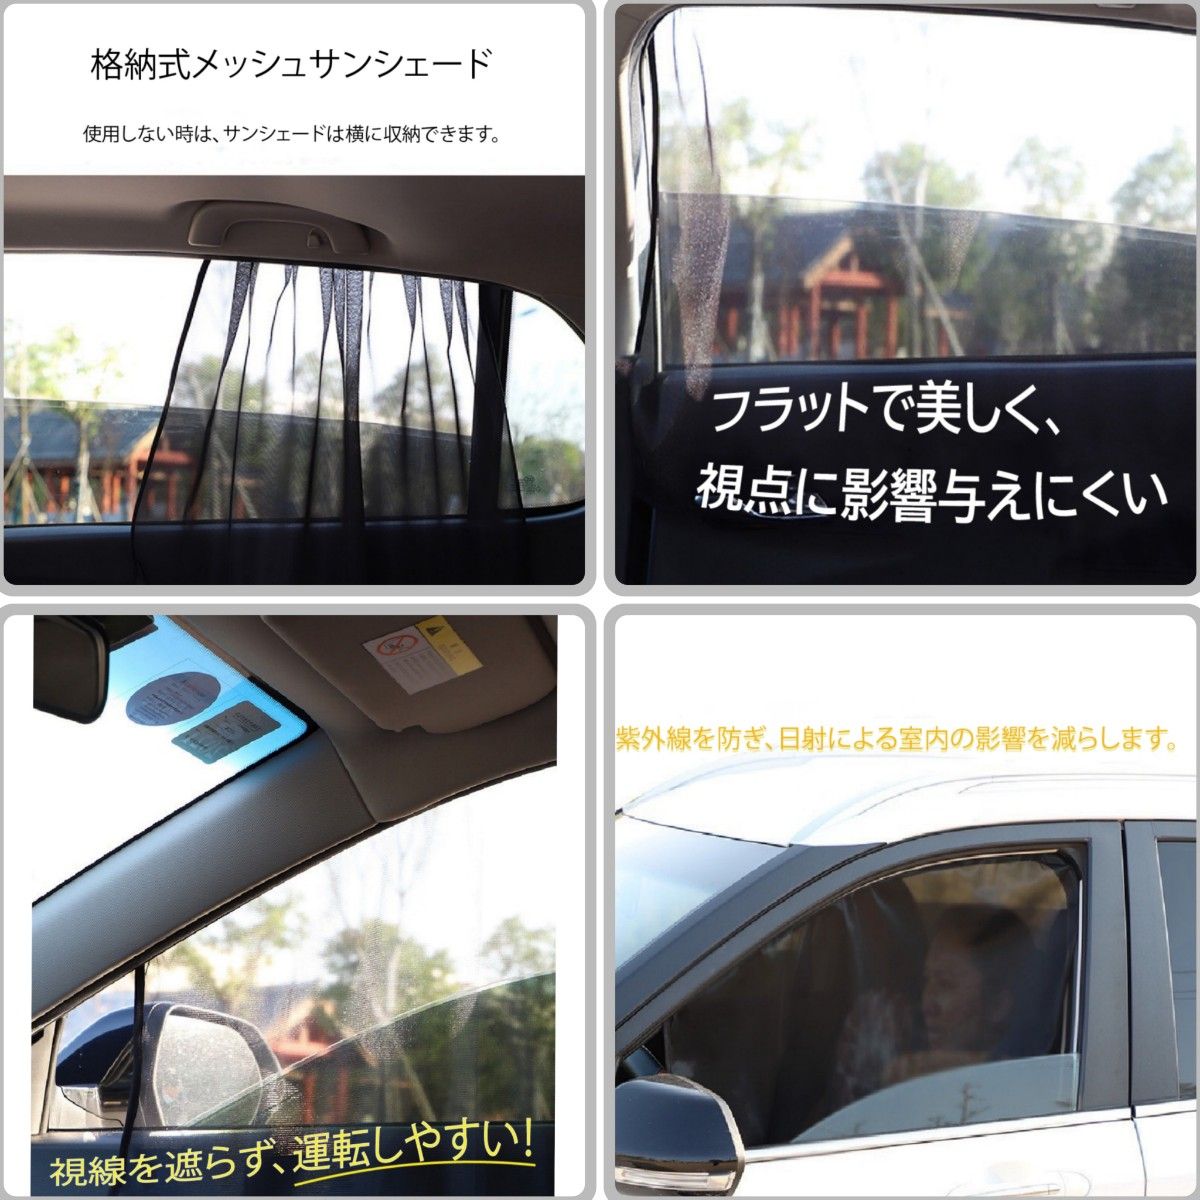 【前窓用2枚セット】遮光サンシェード 車中泊 磁石カーテン ウィンドーネット 車用網戸